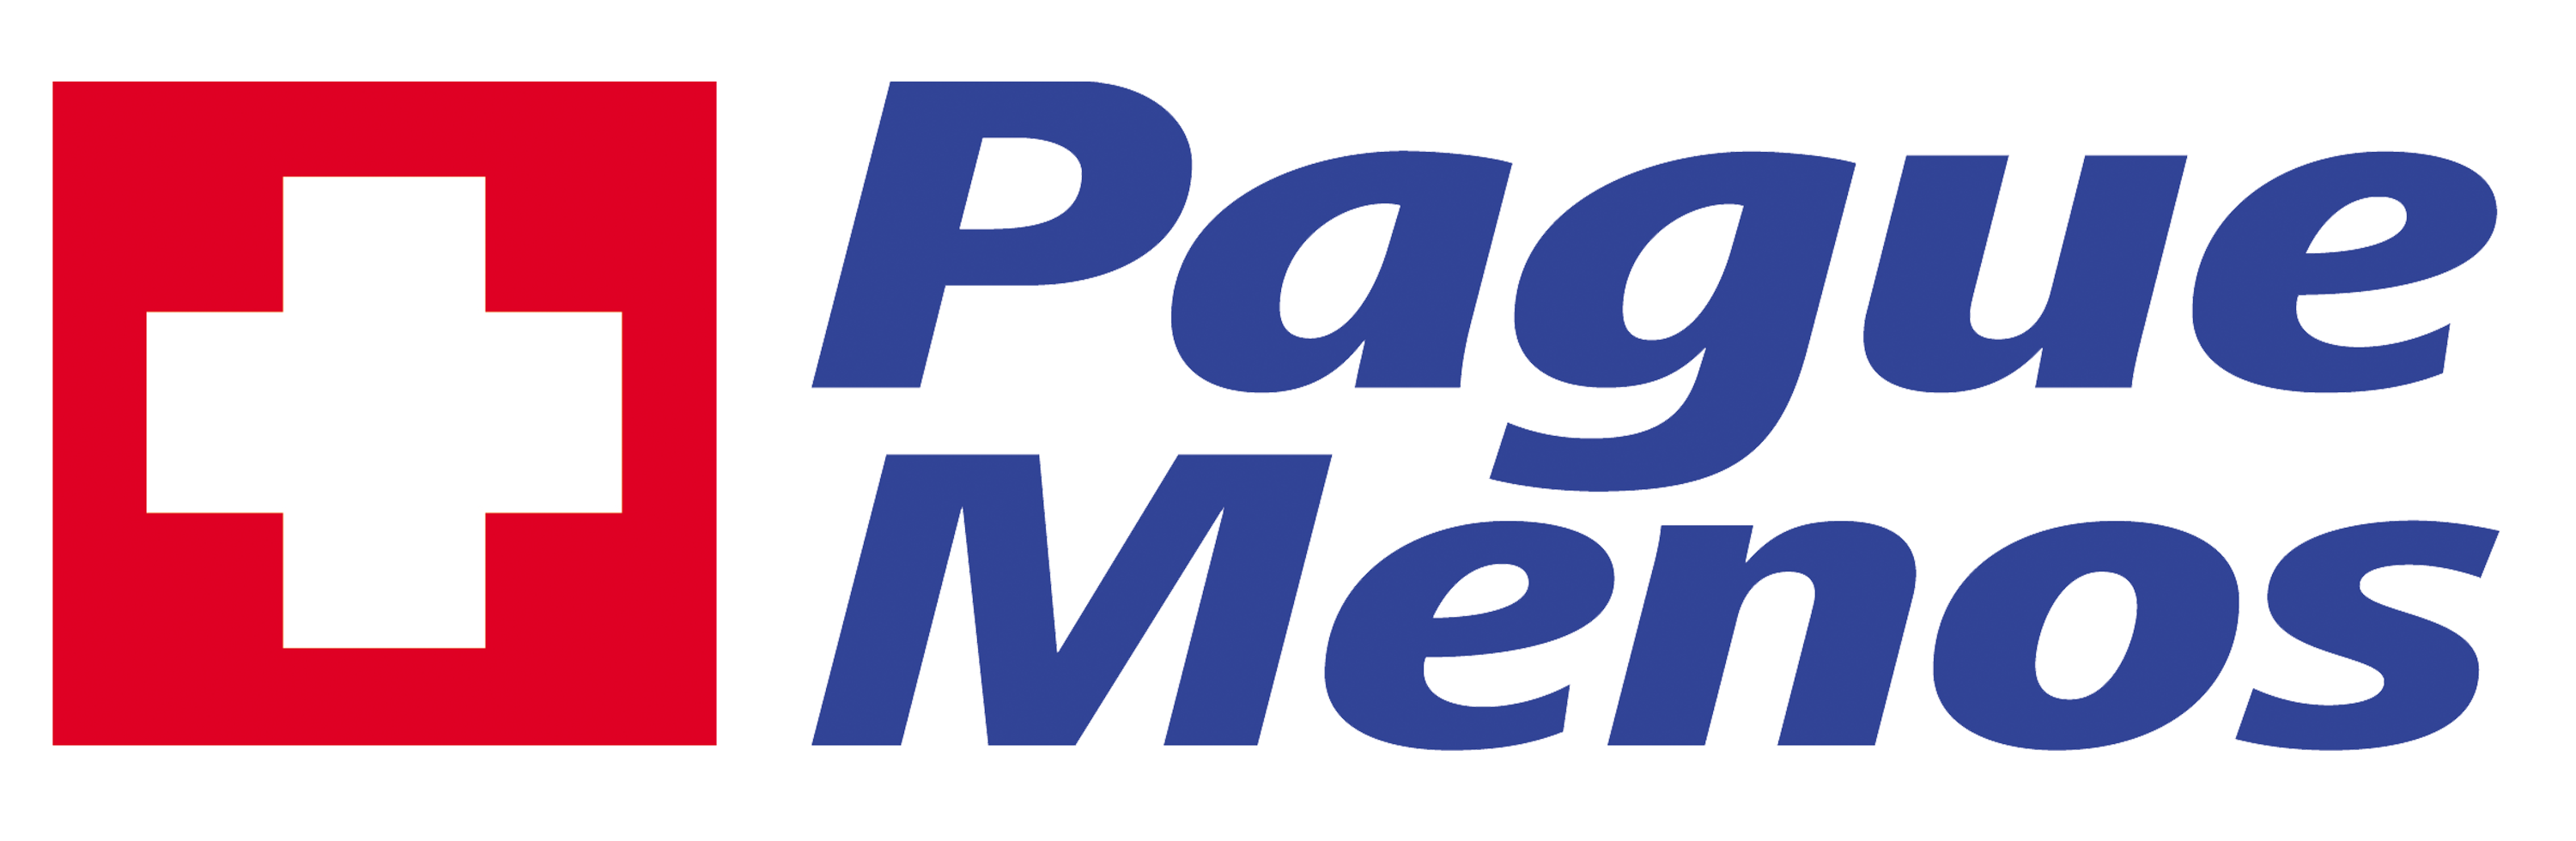 Farmacia Pague Menos -  Pará - MG